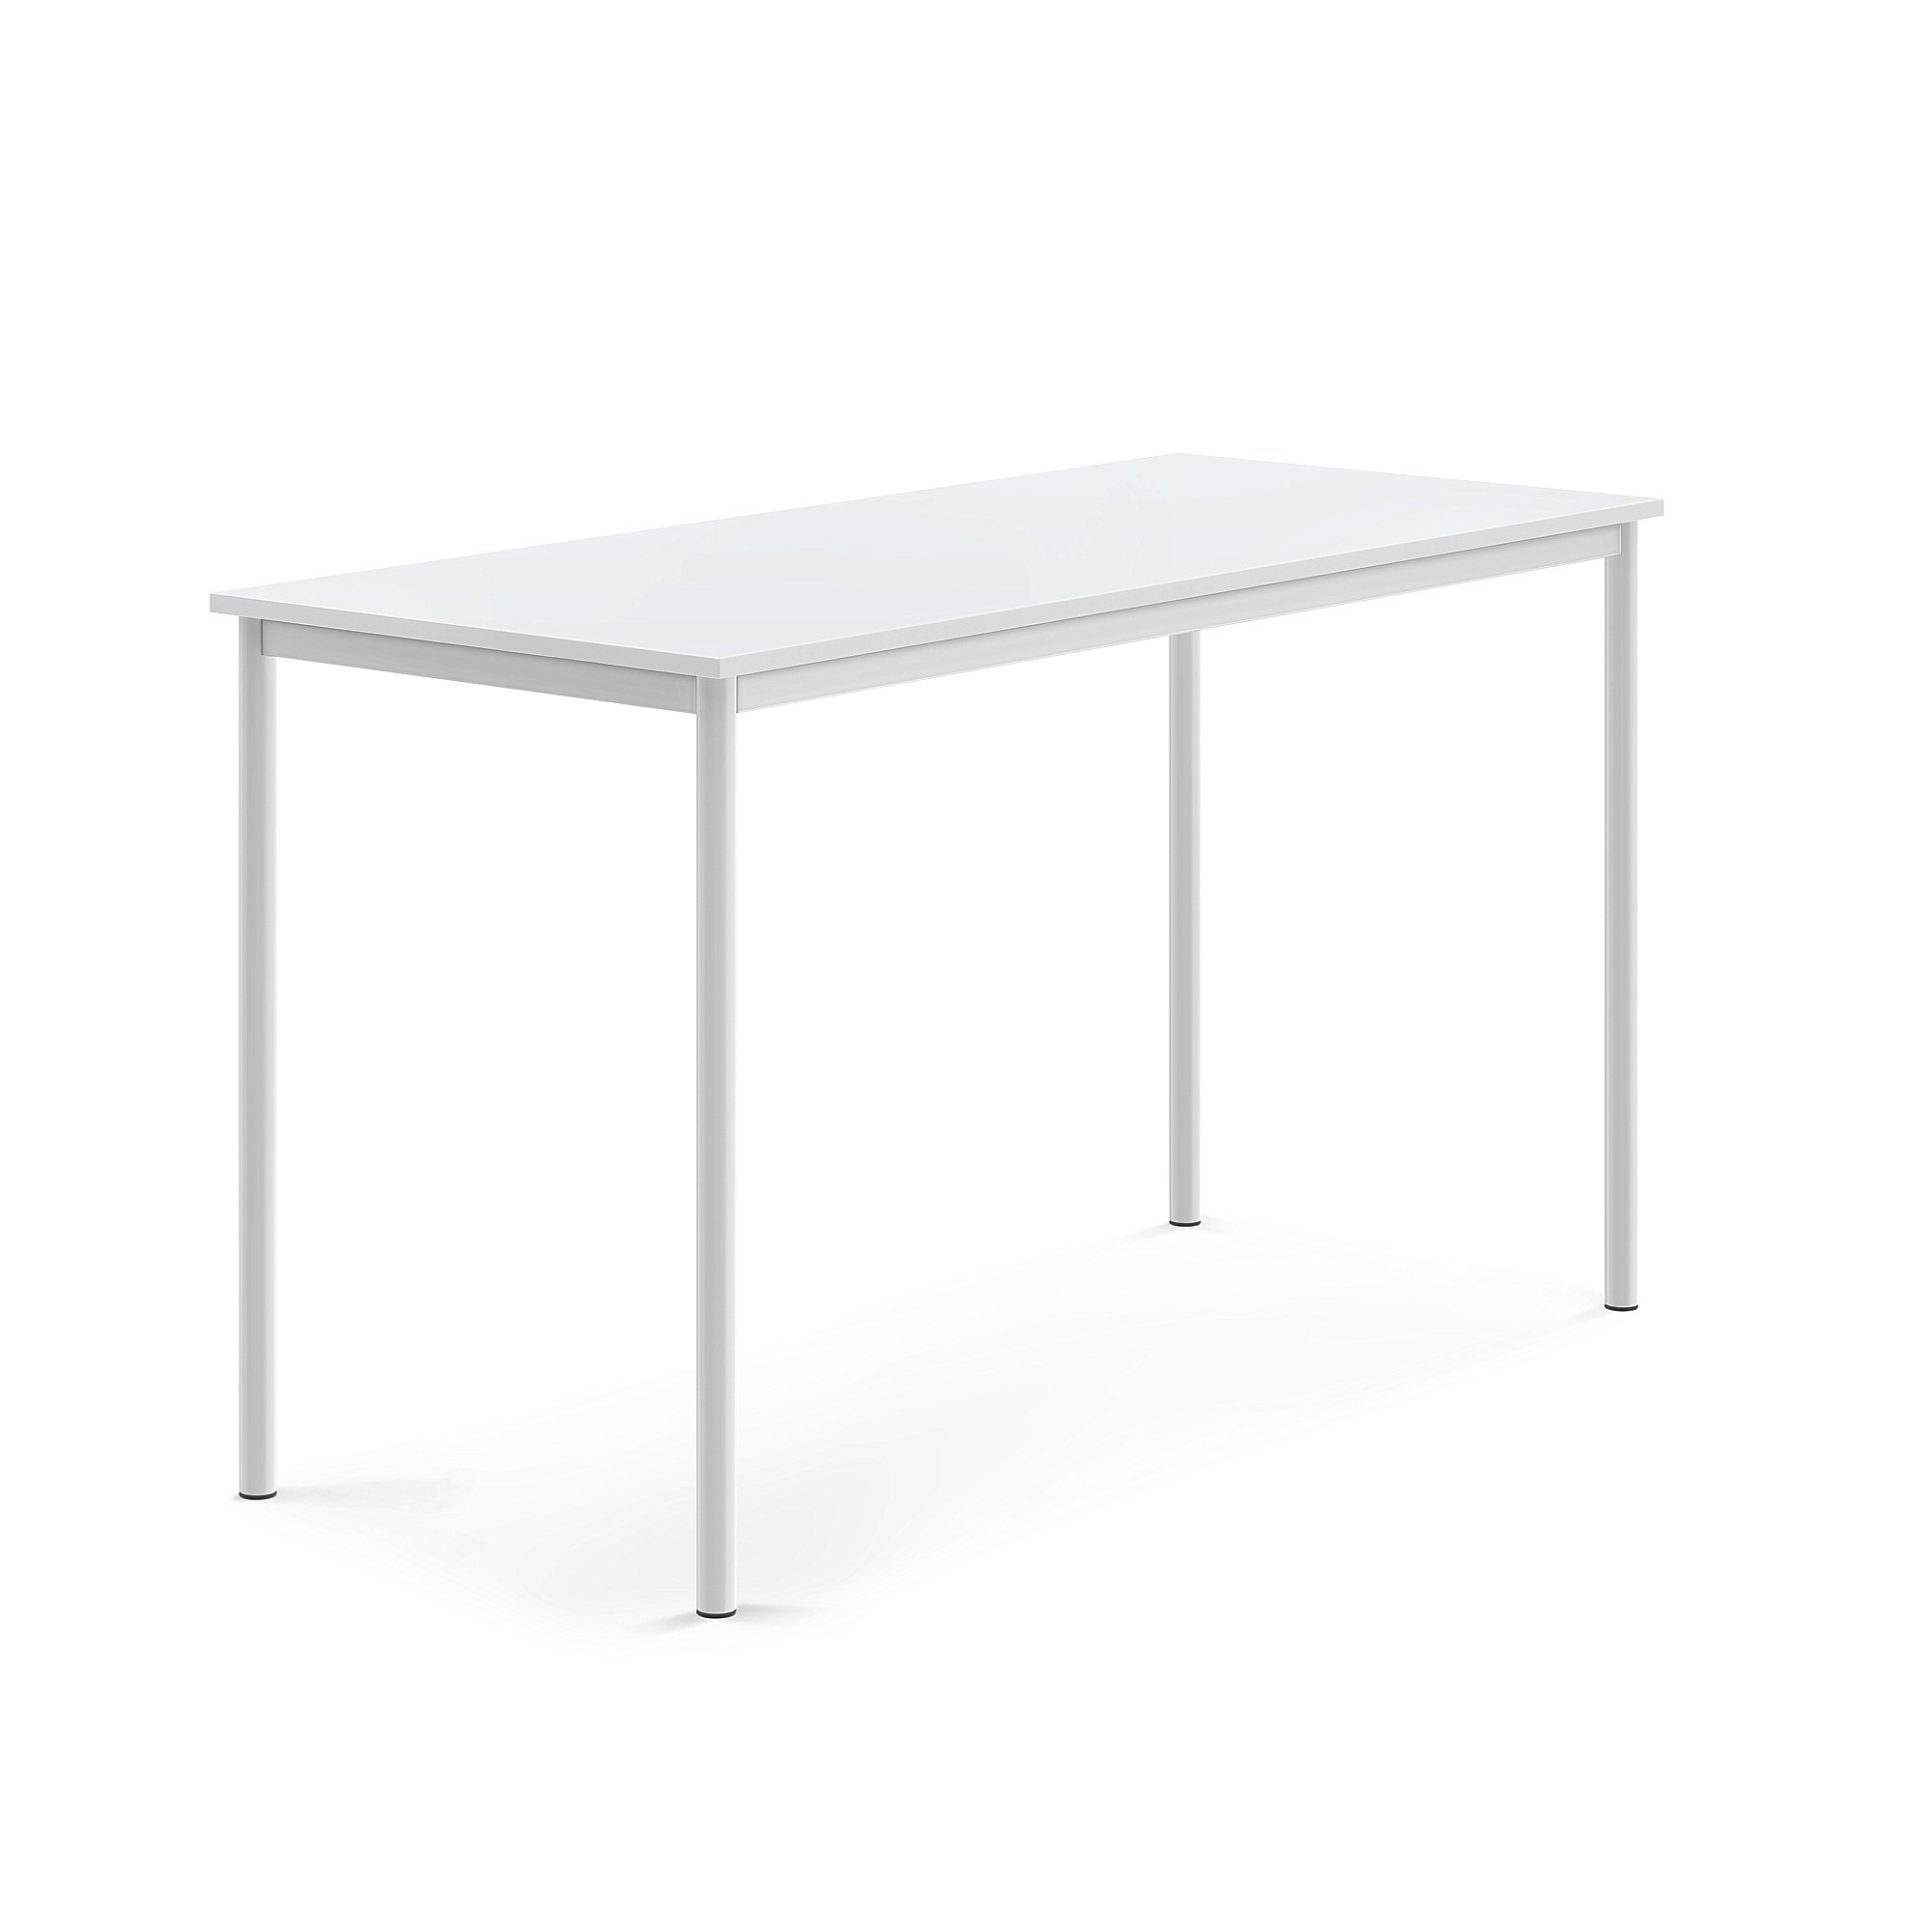 Stůl BORÅS, 1600x700x900 mm, bílé nohy, HPL deska, bílá